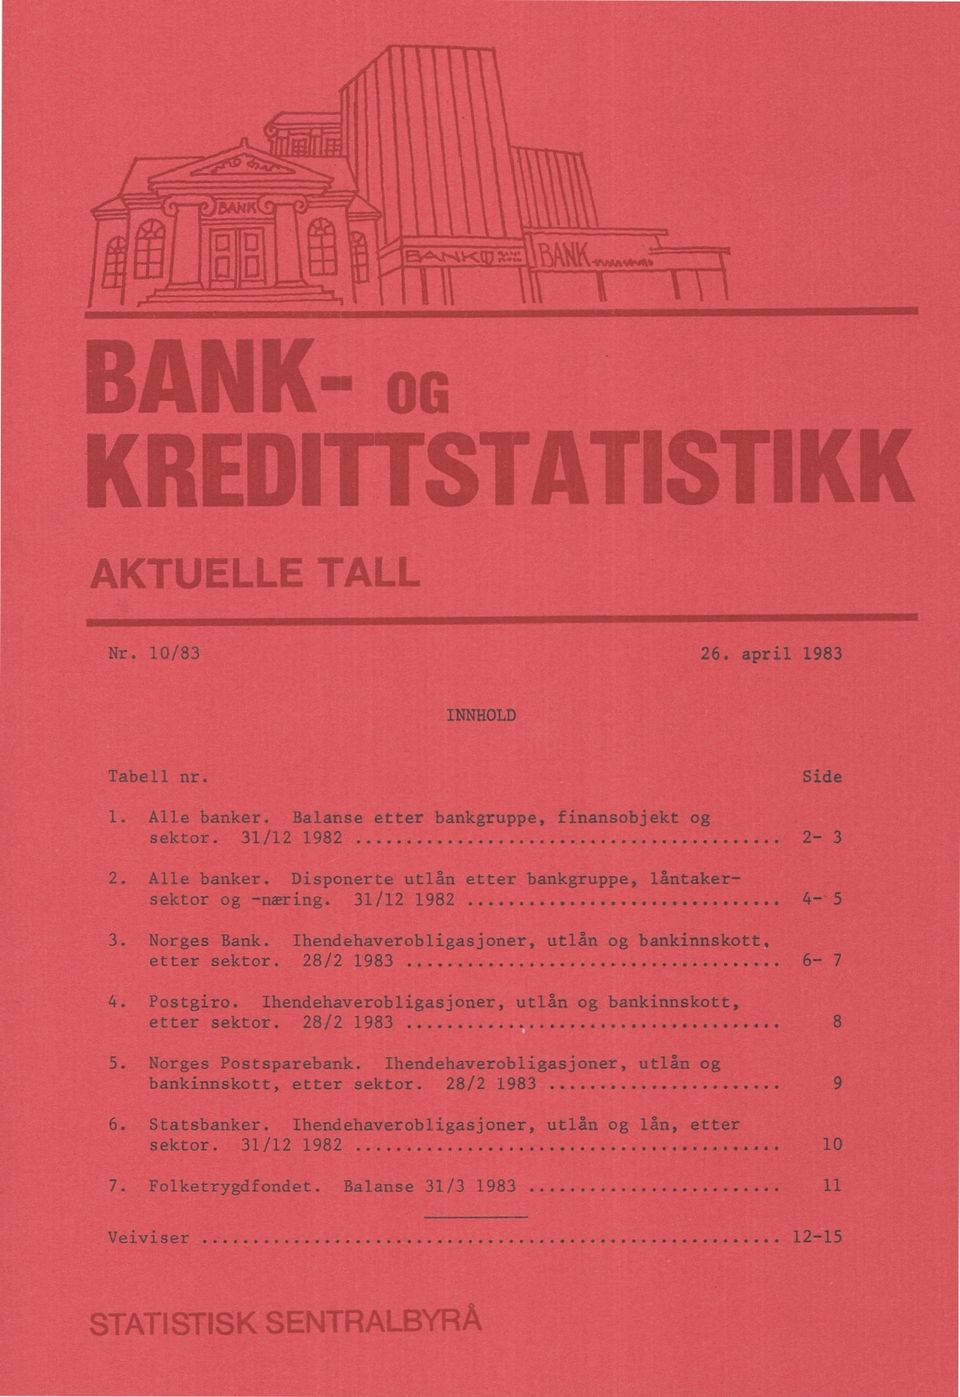 Ihendehaverobligasjoner, utlån og bankinnskott, etter sektor. 28/2 1983 5. Norges Postsparebank. Ihendehaverobligasjoner, utlån og bankinnskott, etter sektor.